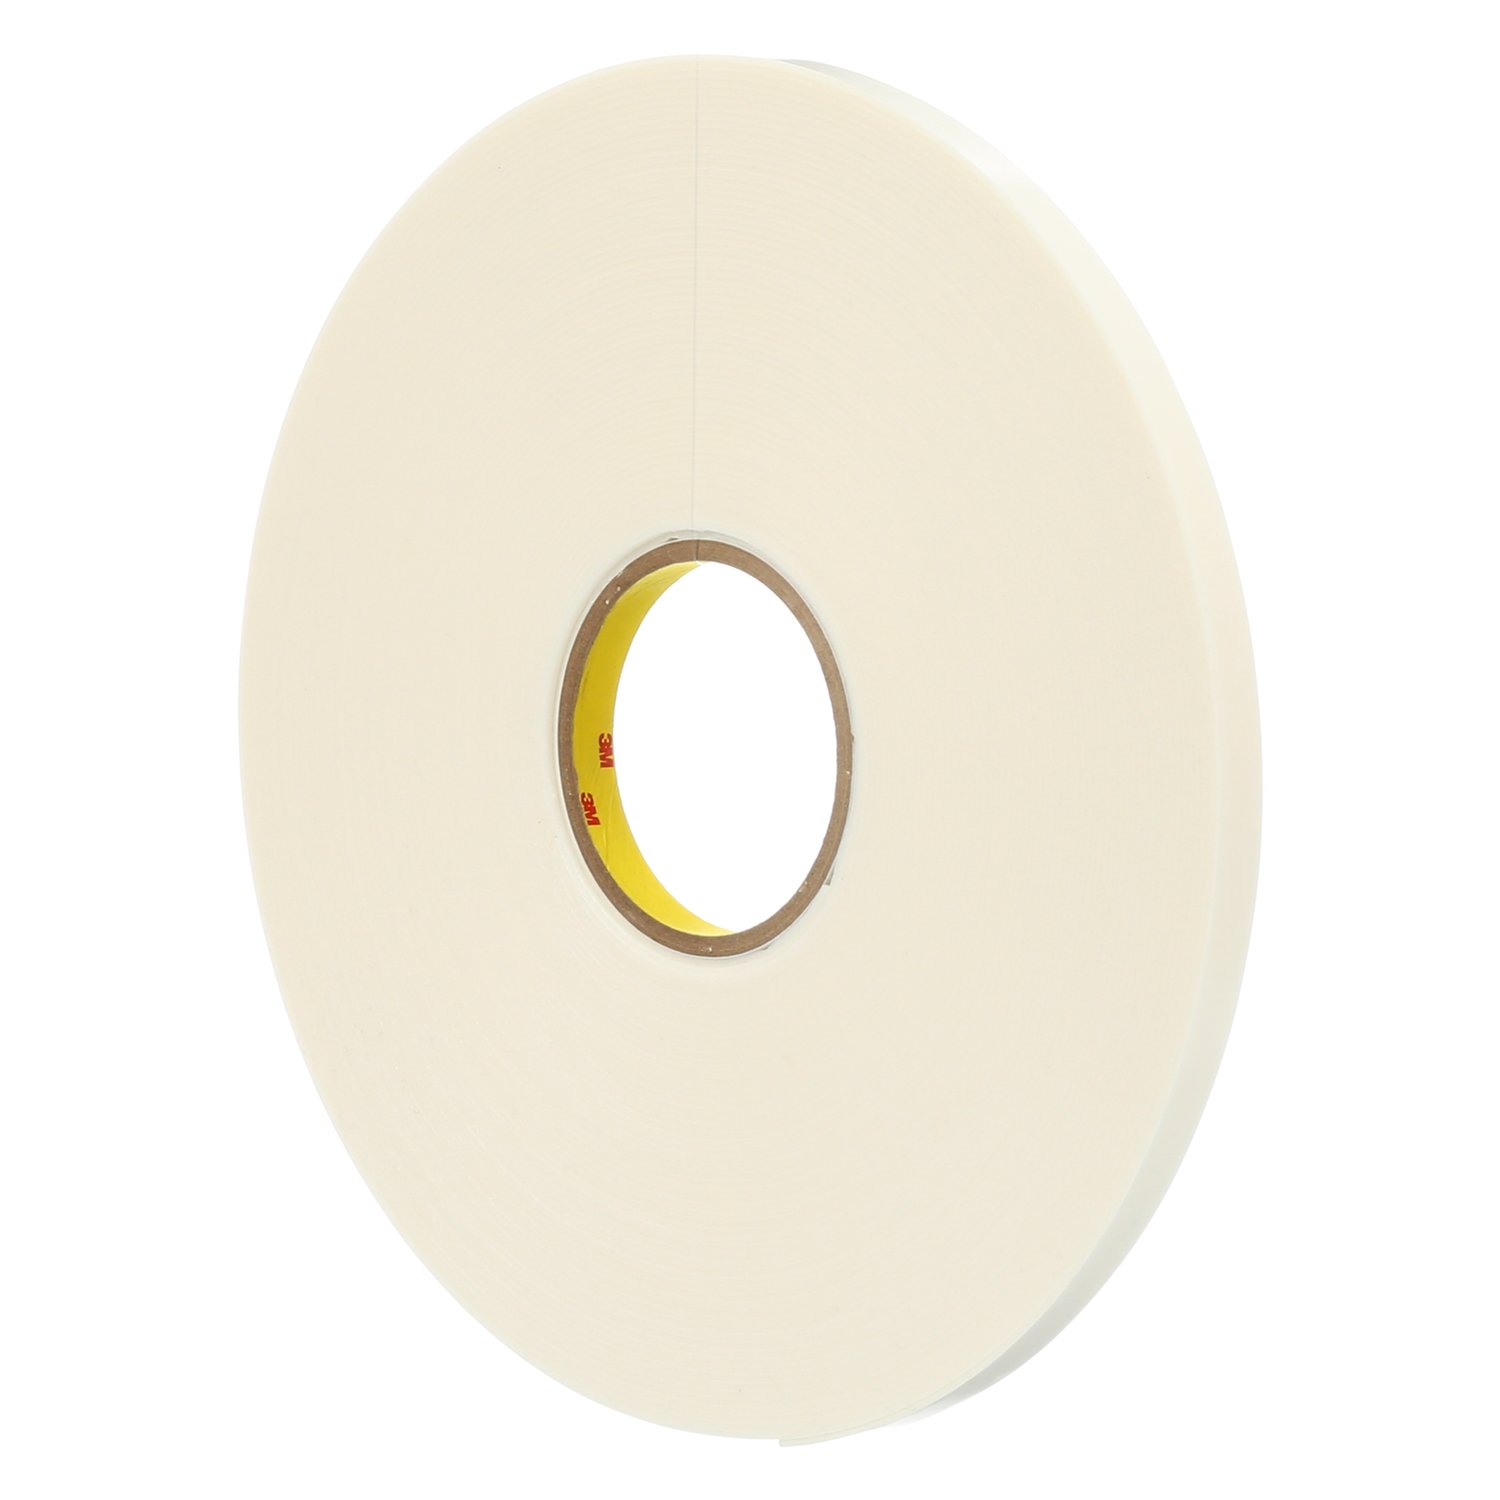 7000029027 - 3M Double Coated Polyethylene Foam Tape 4466, White, 1 1/2 in x 36 yd,
62 mil, 6 rolls per case